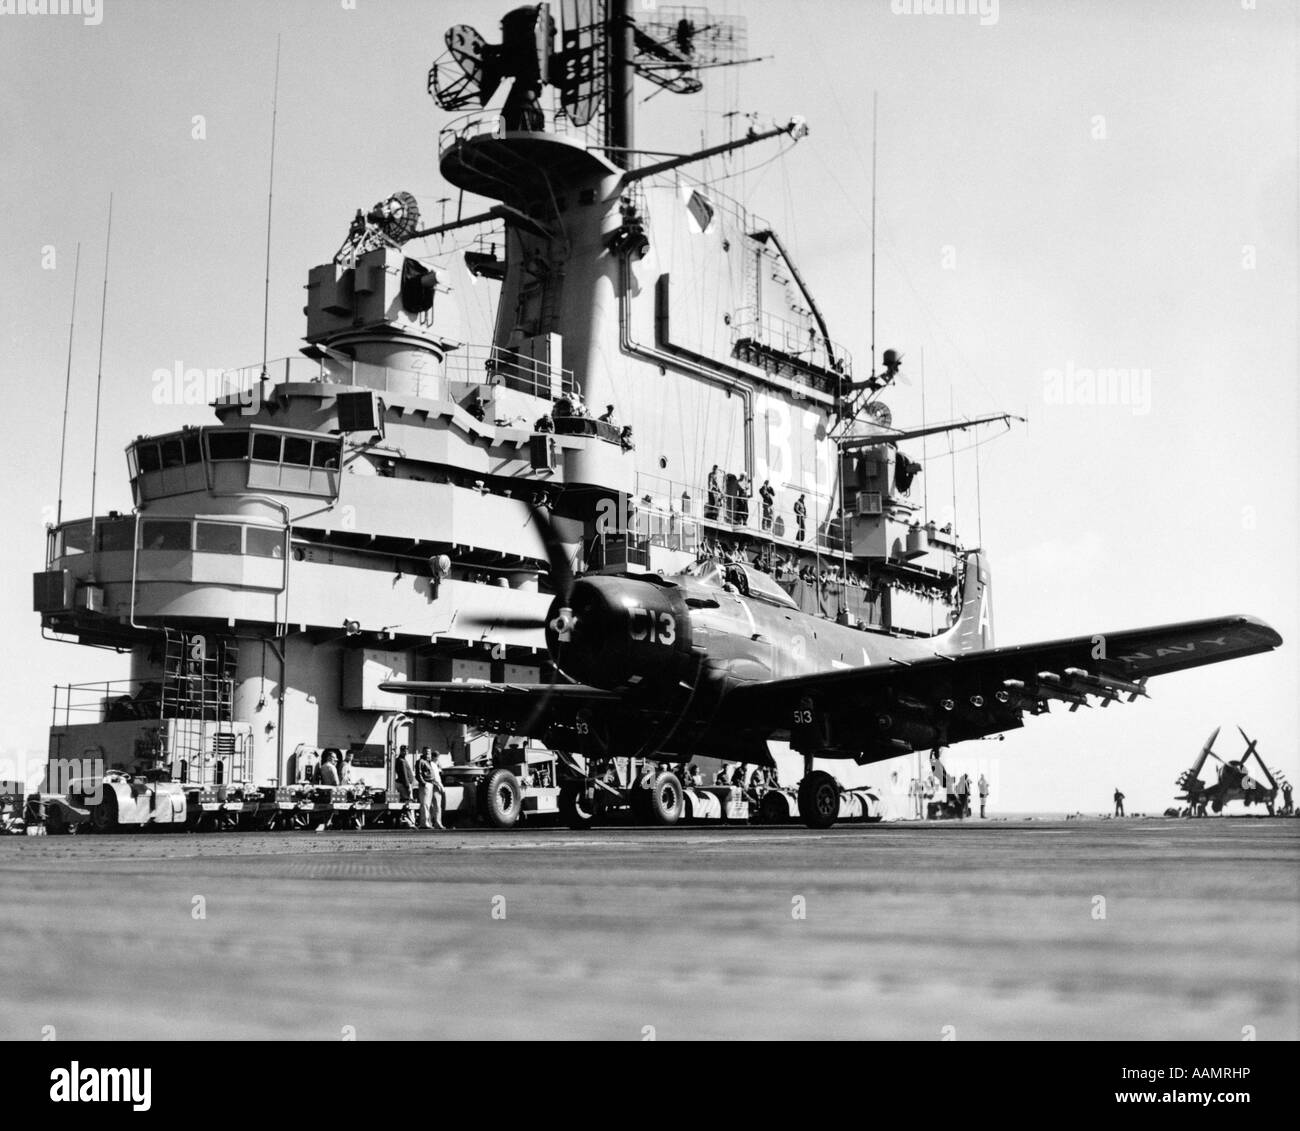 Anni Cinquanta il lancio di attacco aereo bombardiere dal ponte della portaerei durante la guerra di Corea US NAVY SHIP USS KEARSARGE Foto Stock